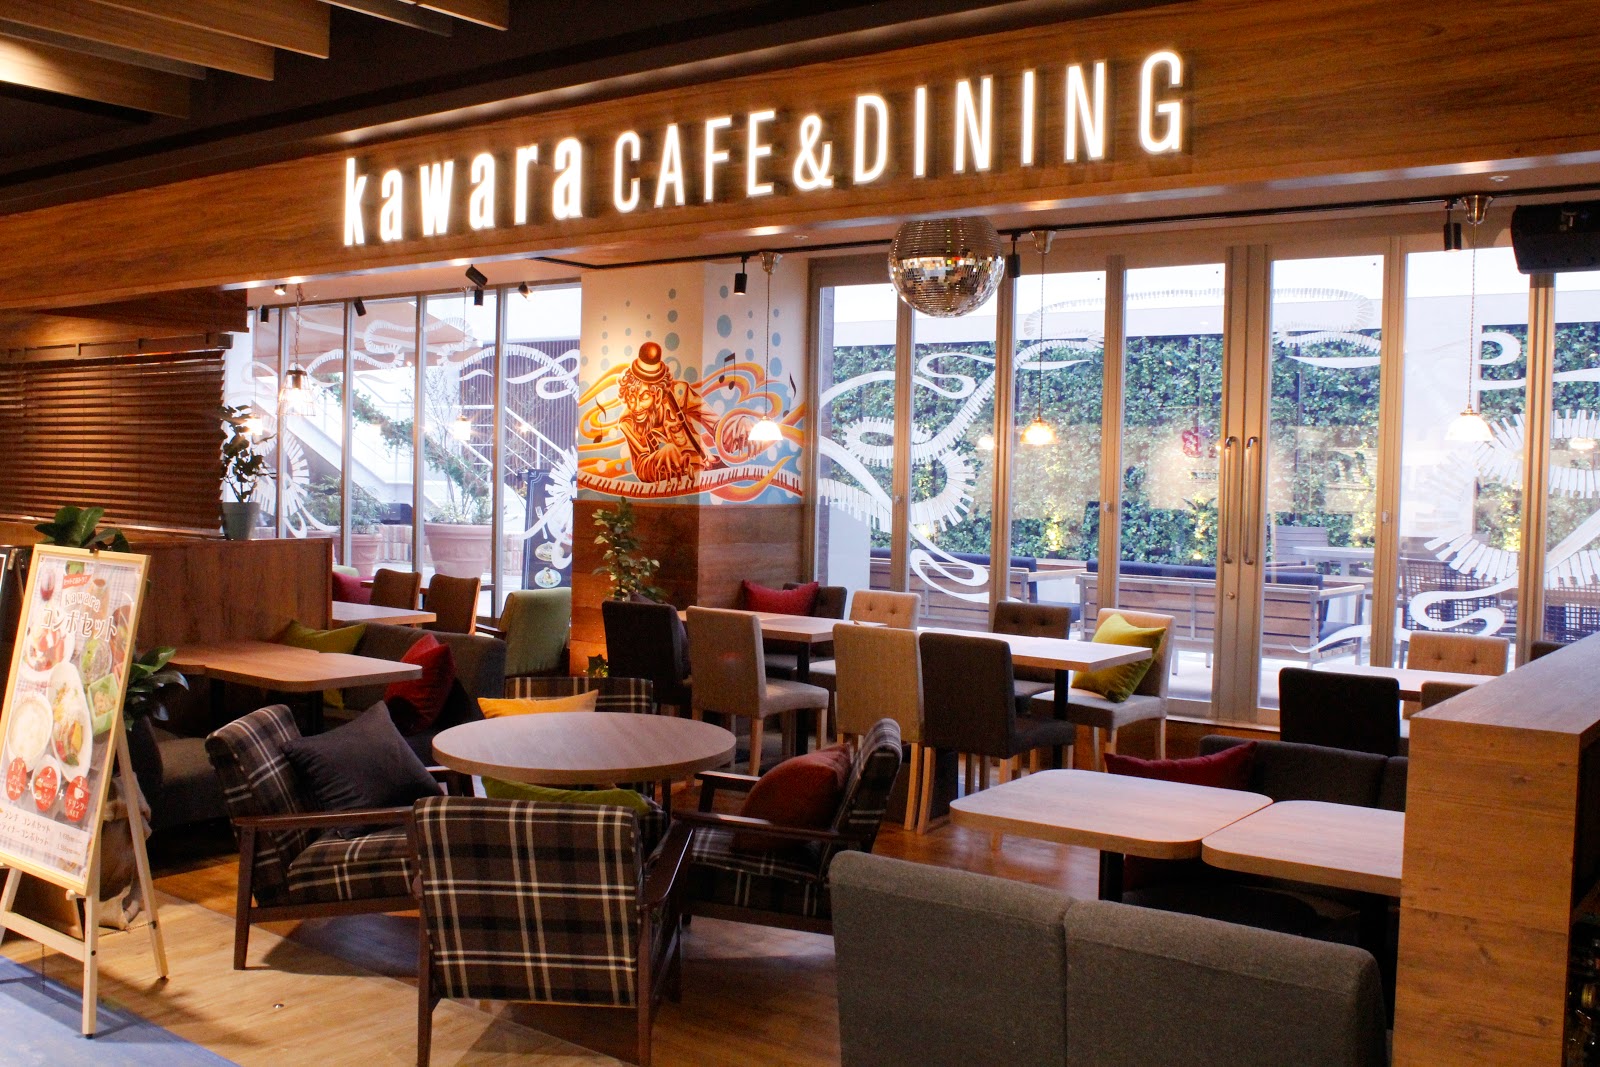 kawara CAFE＆DINING 錦糸町店の風景